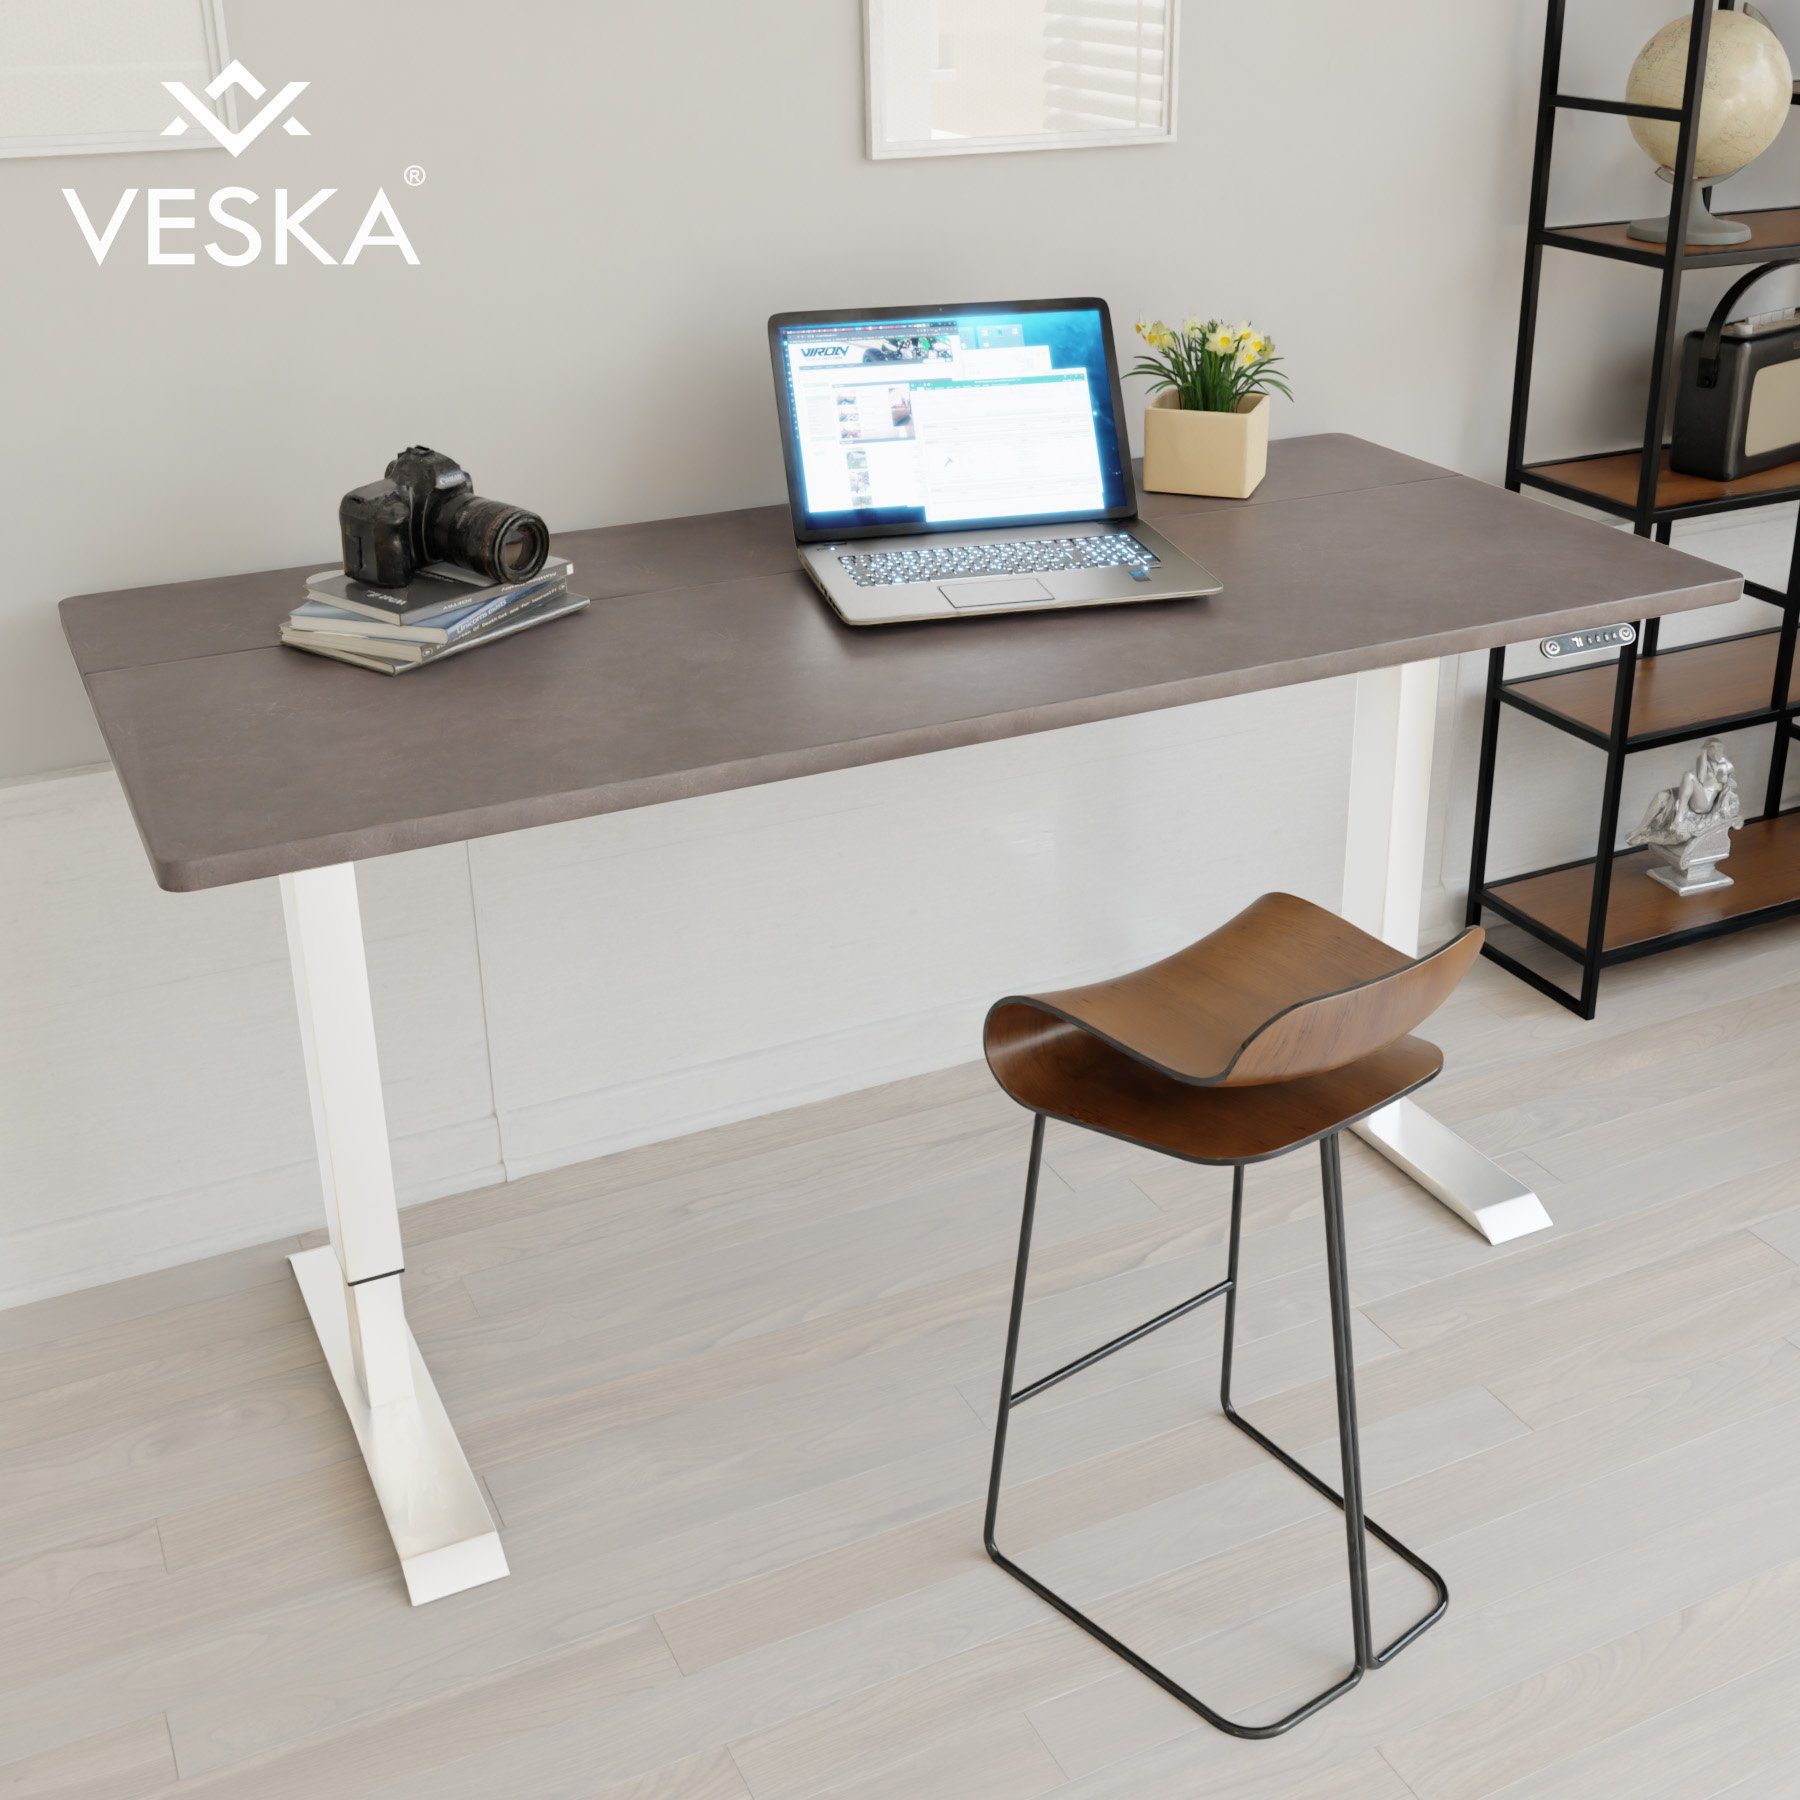 VESKA Schreibtisch Höhenverstellbar 140 x 70 cm - Bürotisch Elektrisch mit Touchscreen - Sitz- & Stehpult Home Office Weiß | Stein-Anthrazit